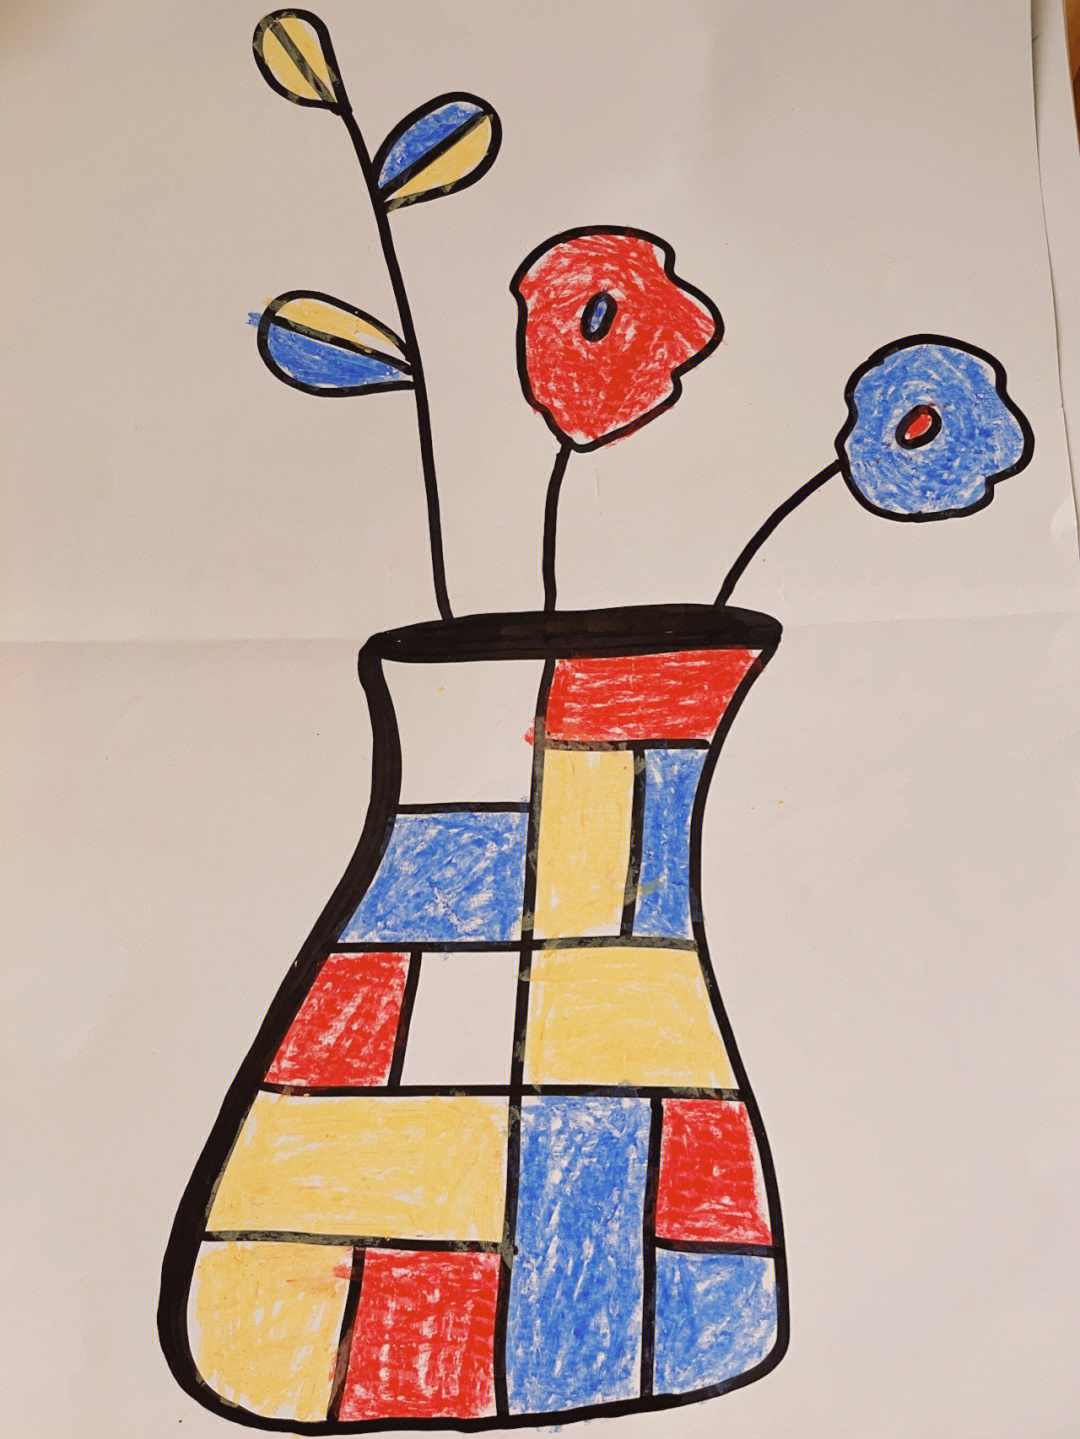 《蒙德里安的瓶子》中班的小朋友所画,运用三原色装饰瓶子,能绘画格子